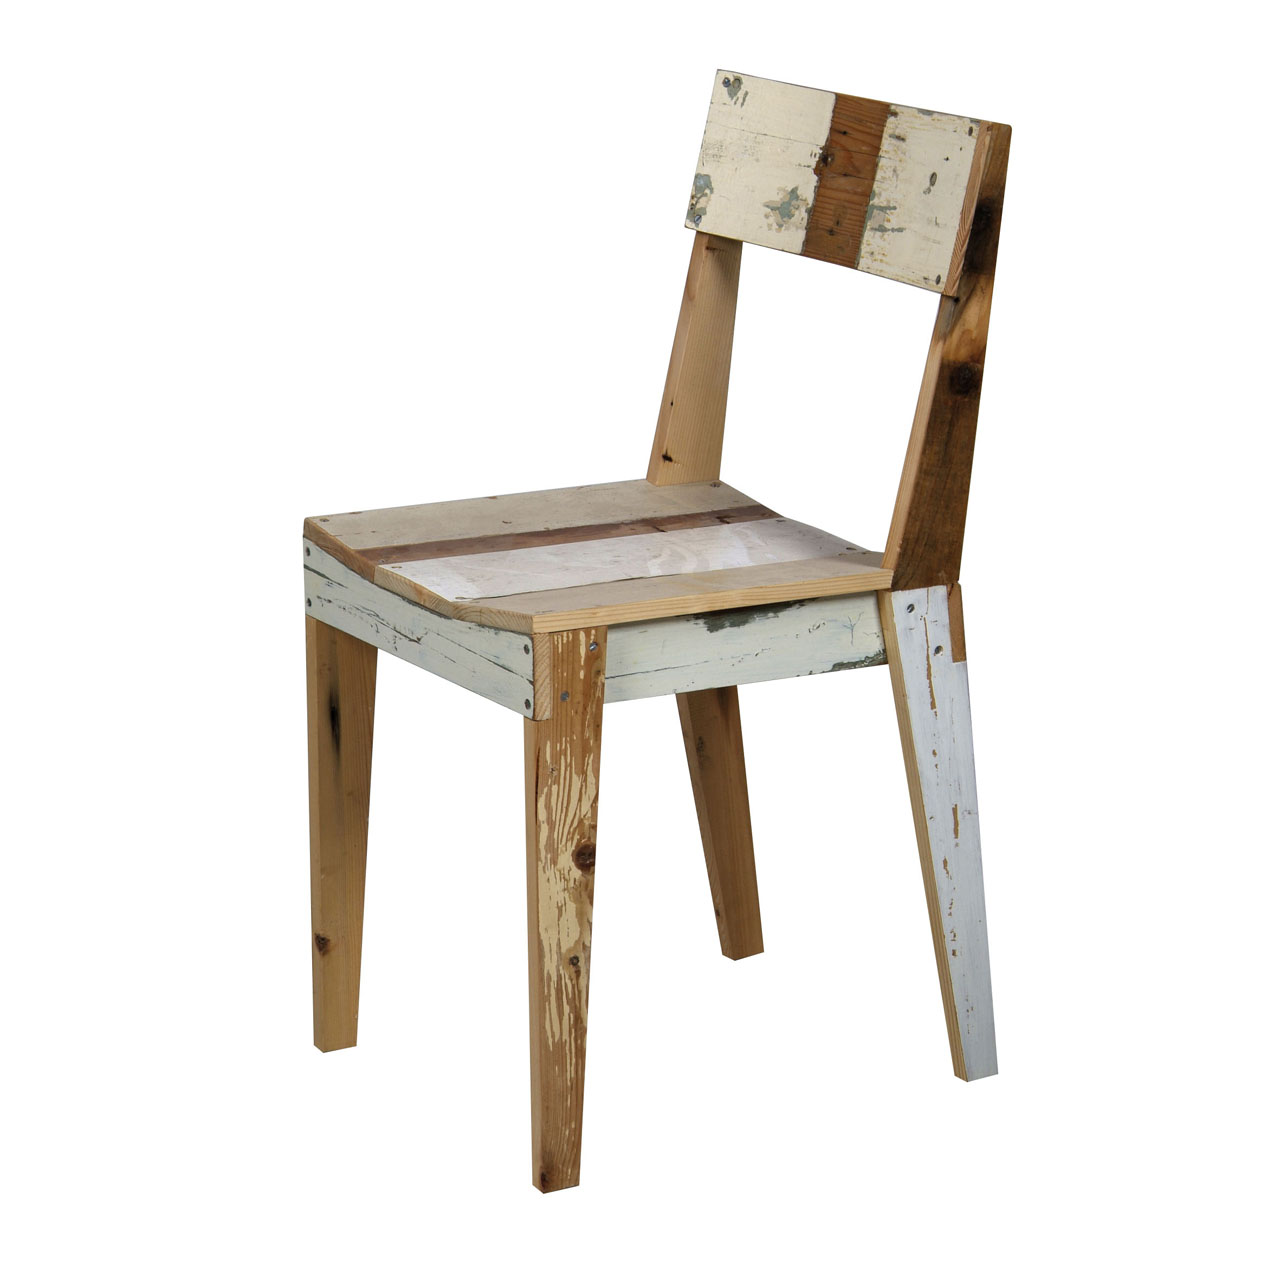 Oak Chair Scrapwood by Piet Hein Eek